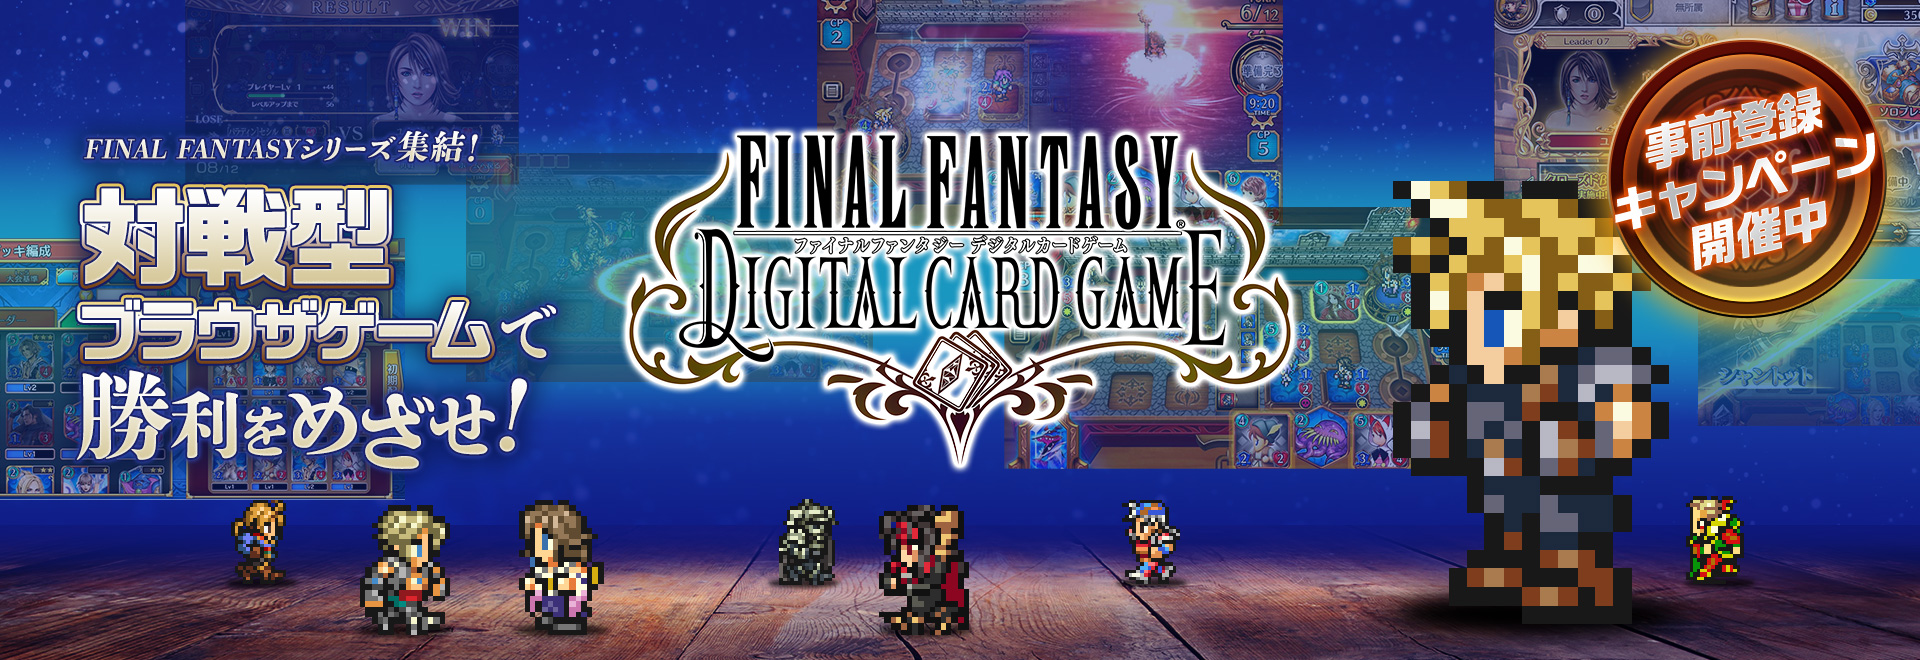 ファイナルファンタジー の完全新作オンライン対戦カードゲーム Ff Digital Card Game 事前登録が開始 スマホとpcでプレイ可能